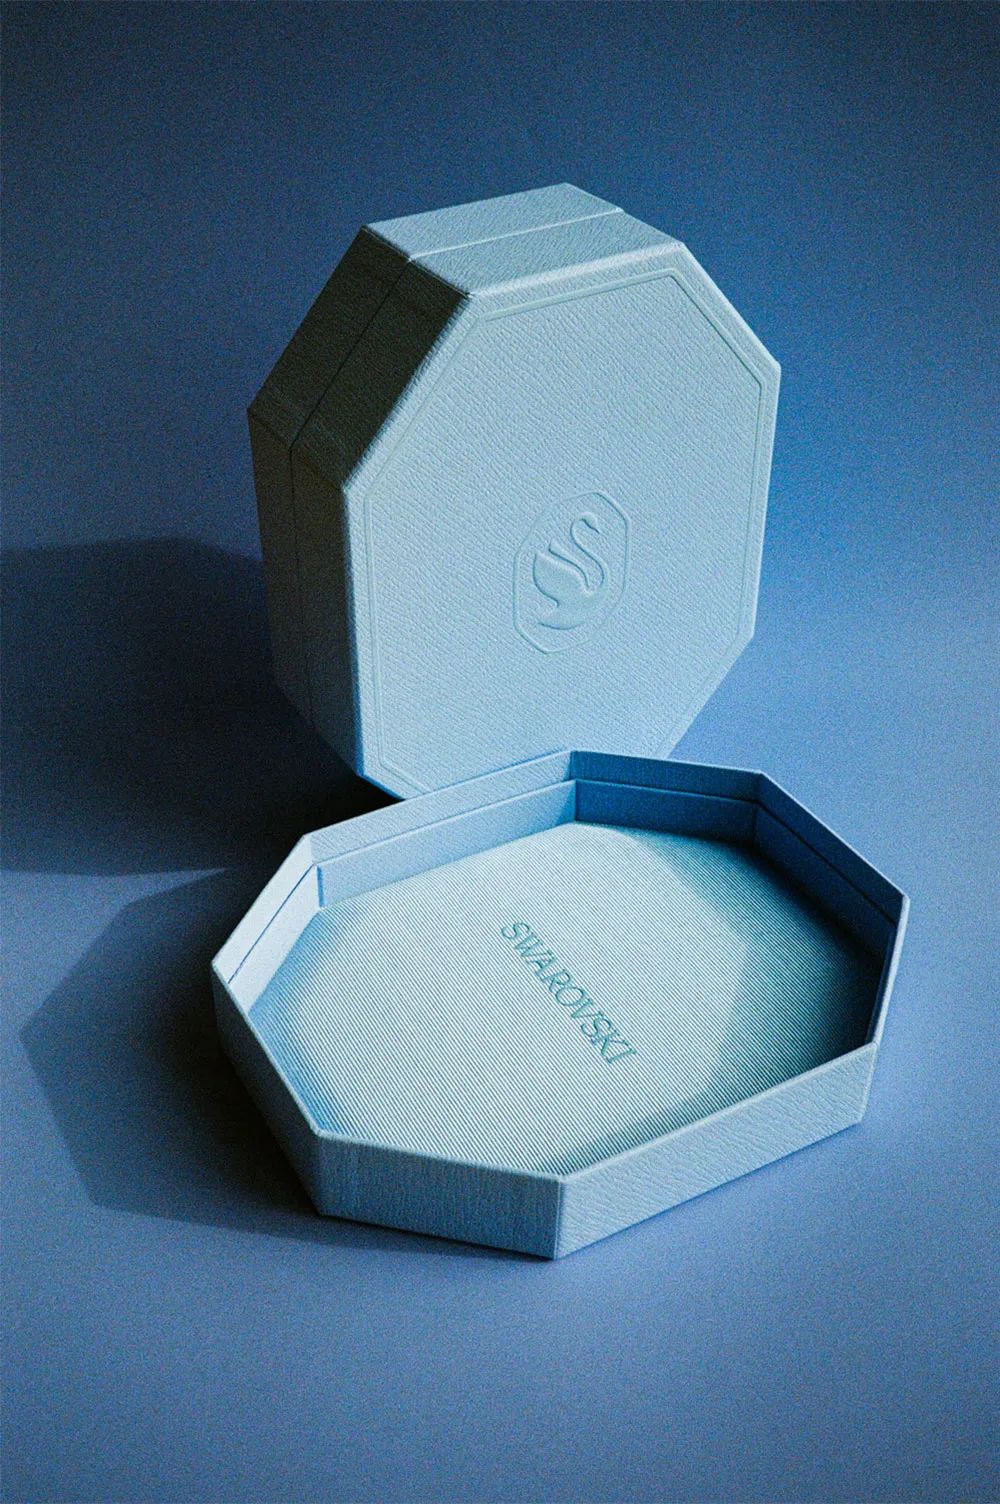 施华洛世奇品牌新LOGO包装设计效果